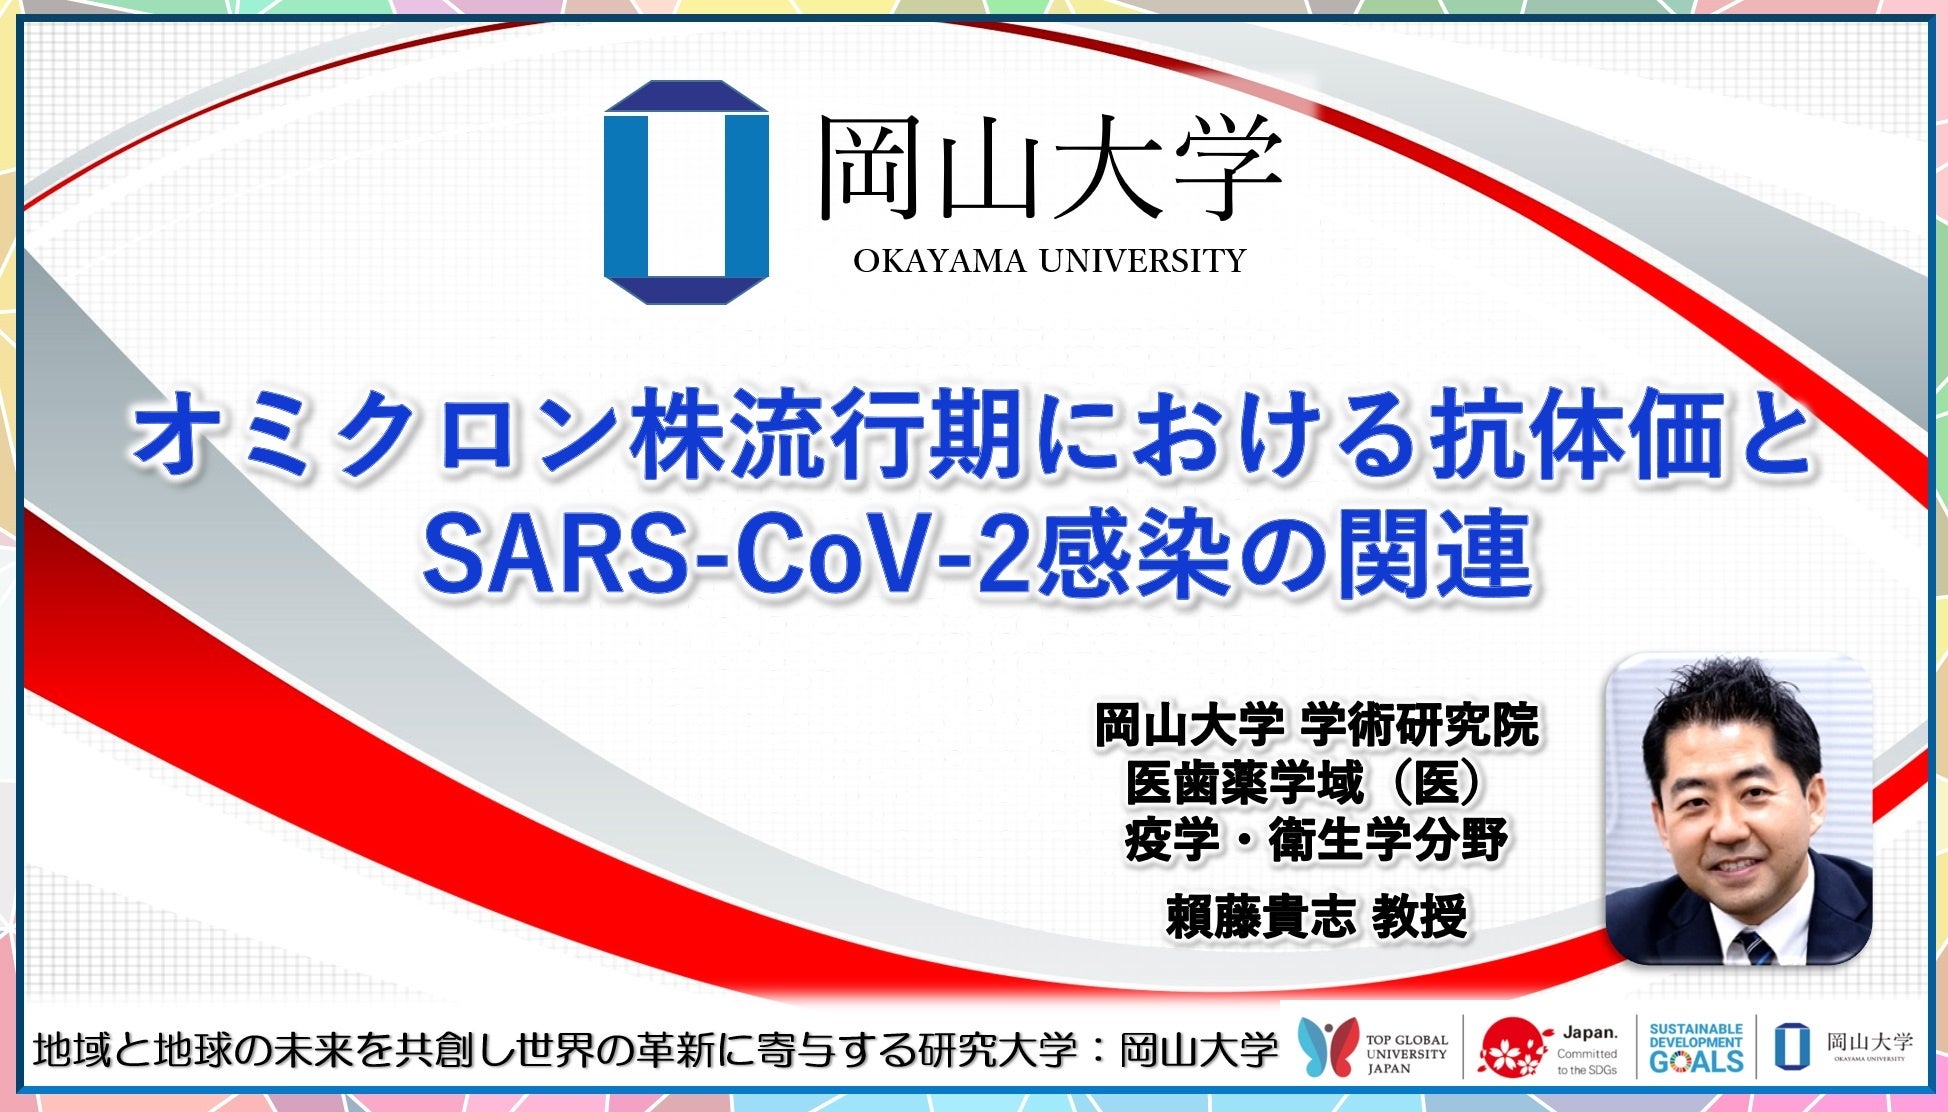 【岡山大学】オミクロン株流行期における抗体価とSARS-CoV-2感染の関連